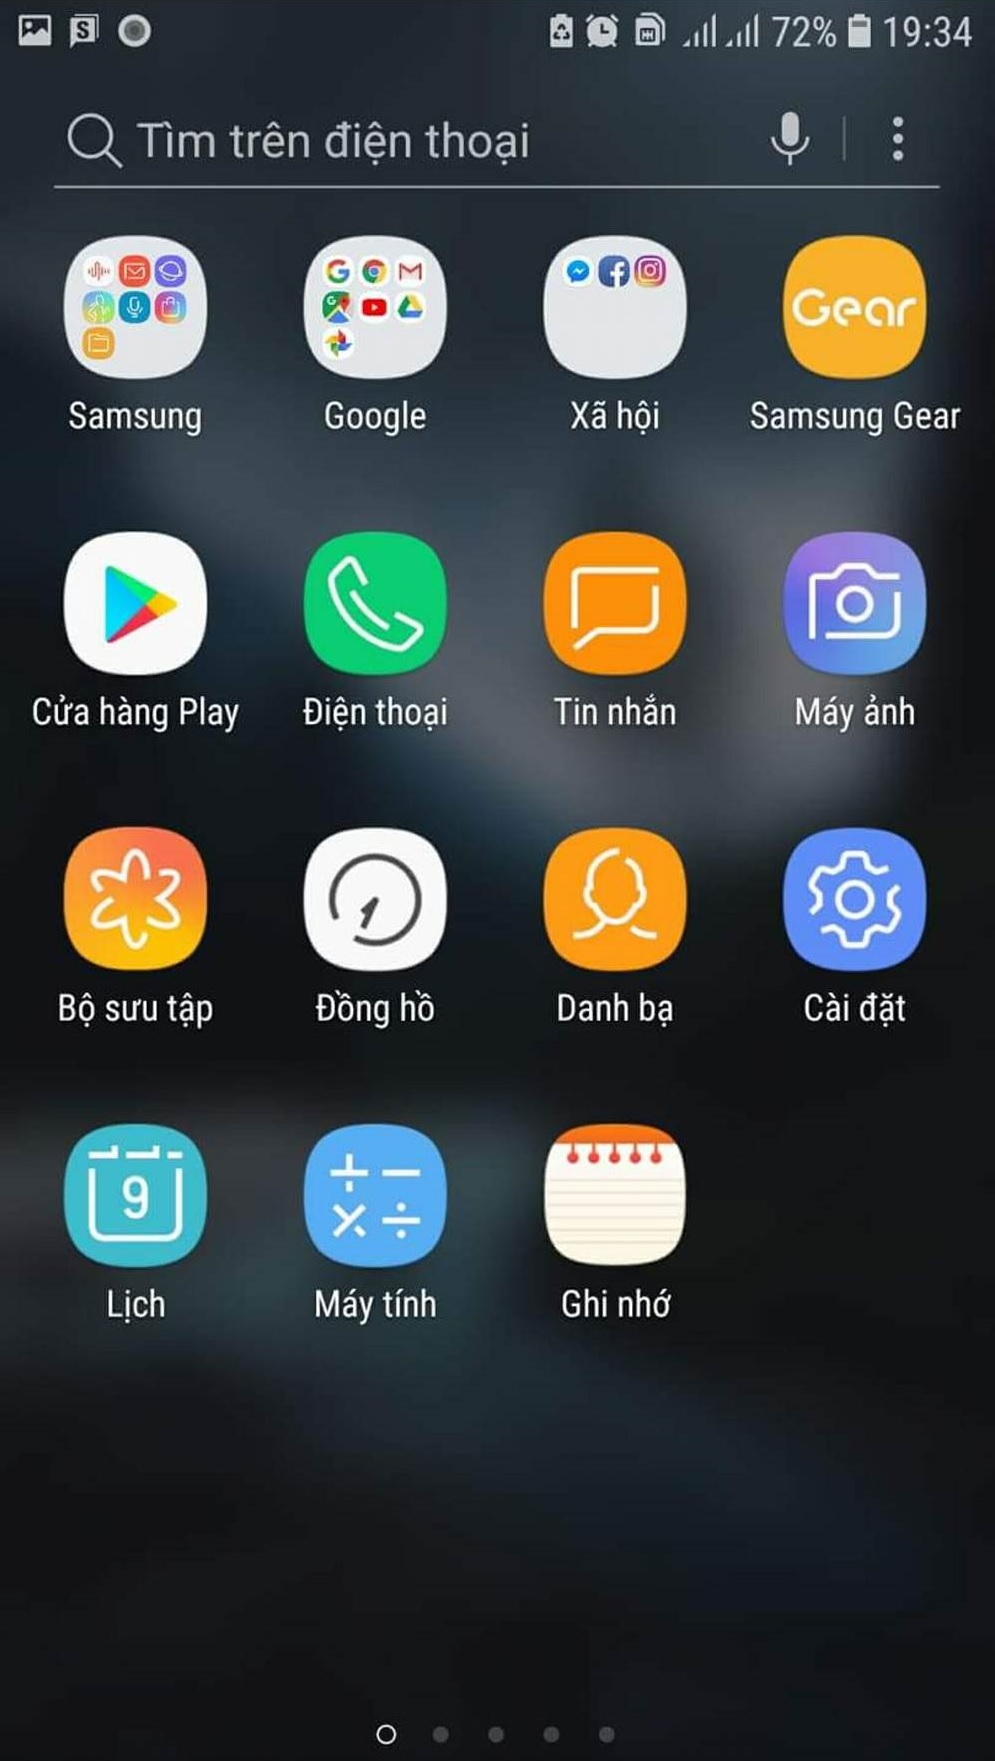 Samsung Galaxy S7/S7 edge Việt Nam đã nhận bản cập
nhật Android 8.0 Oreo